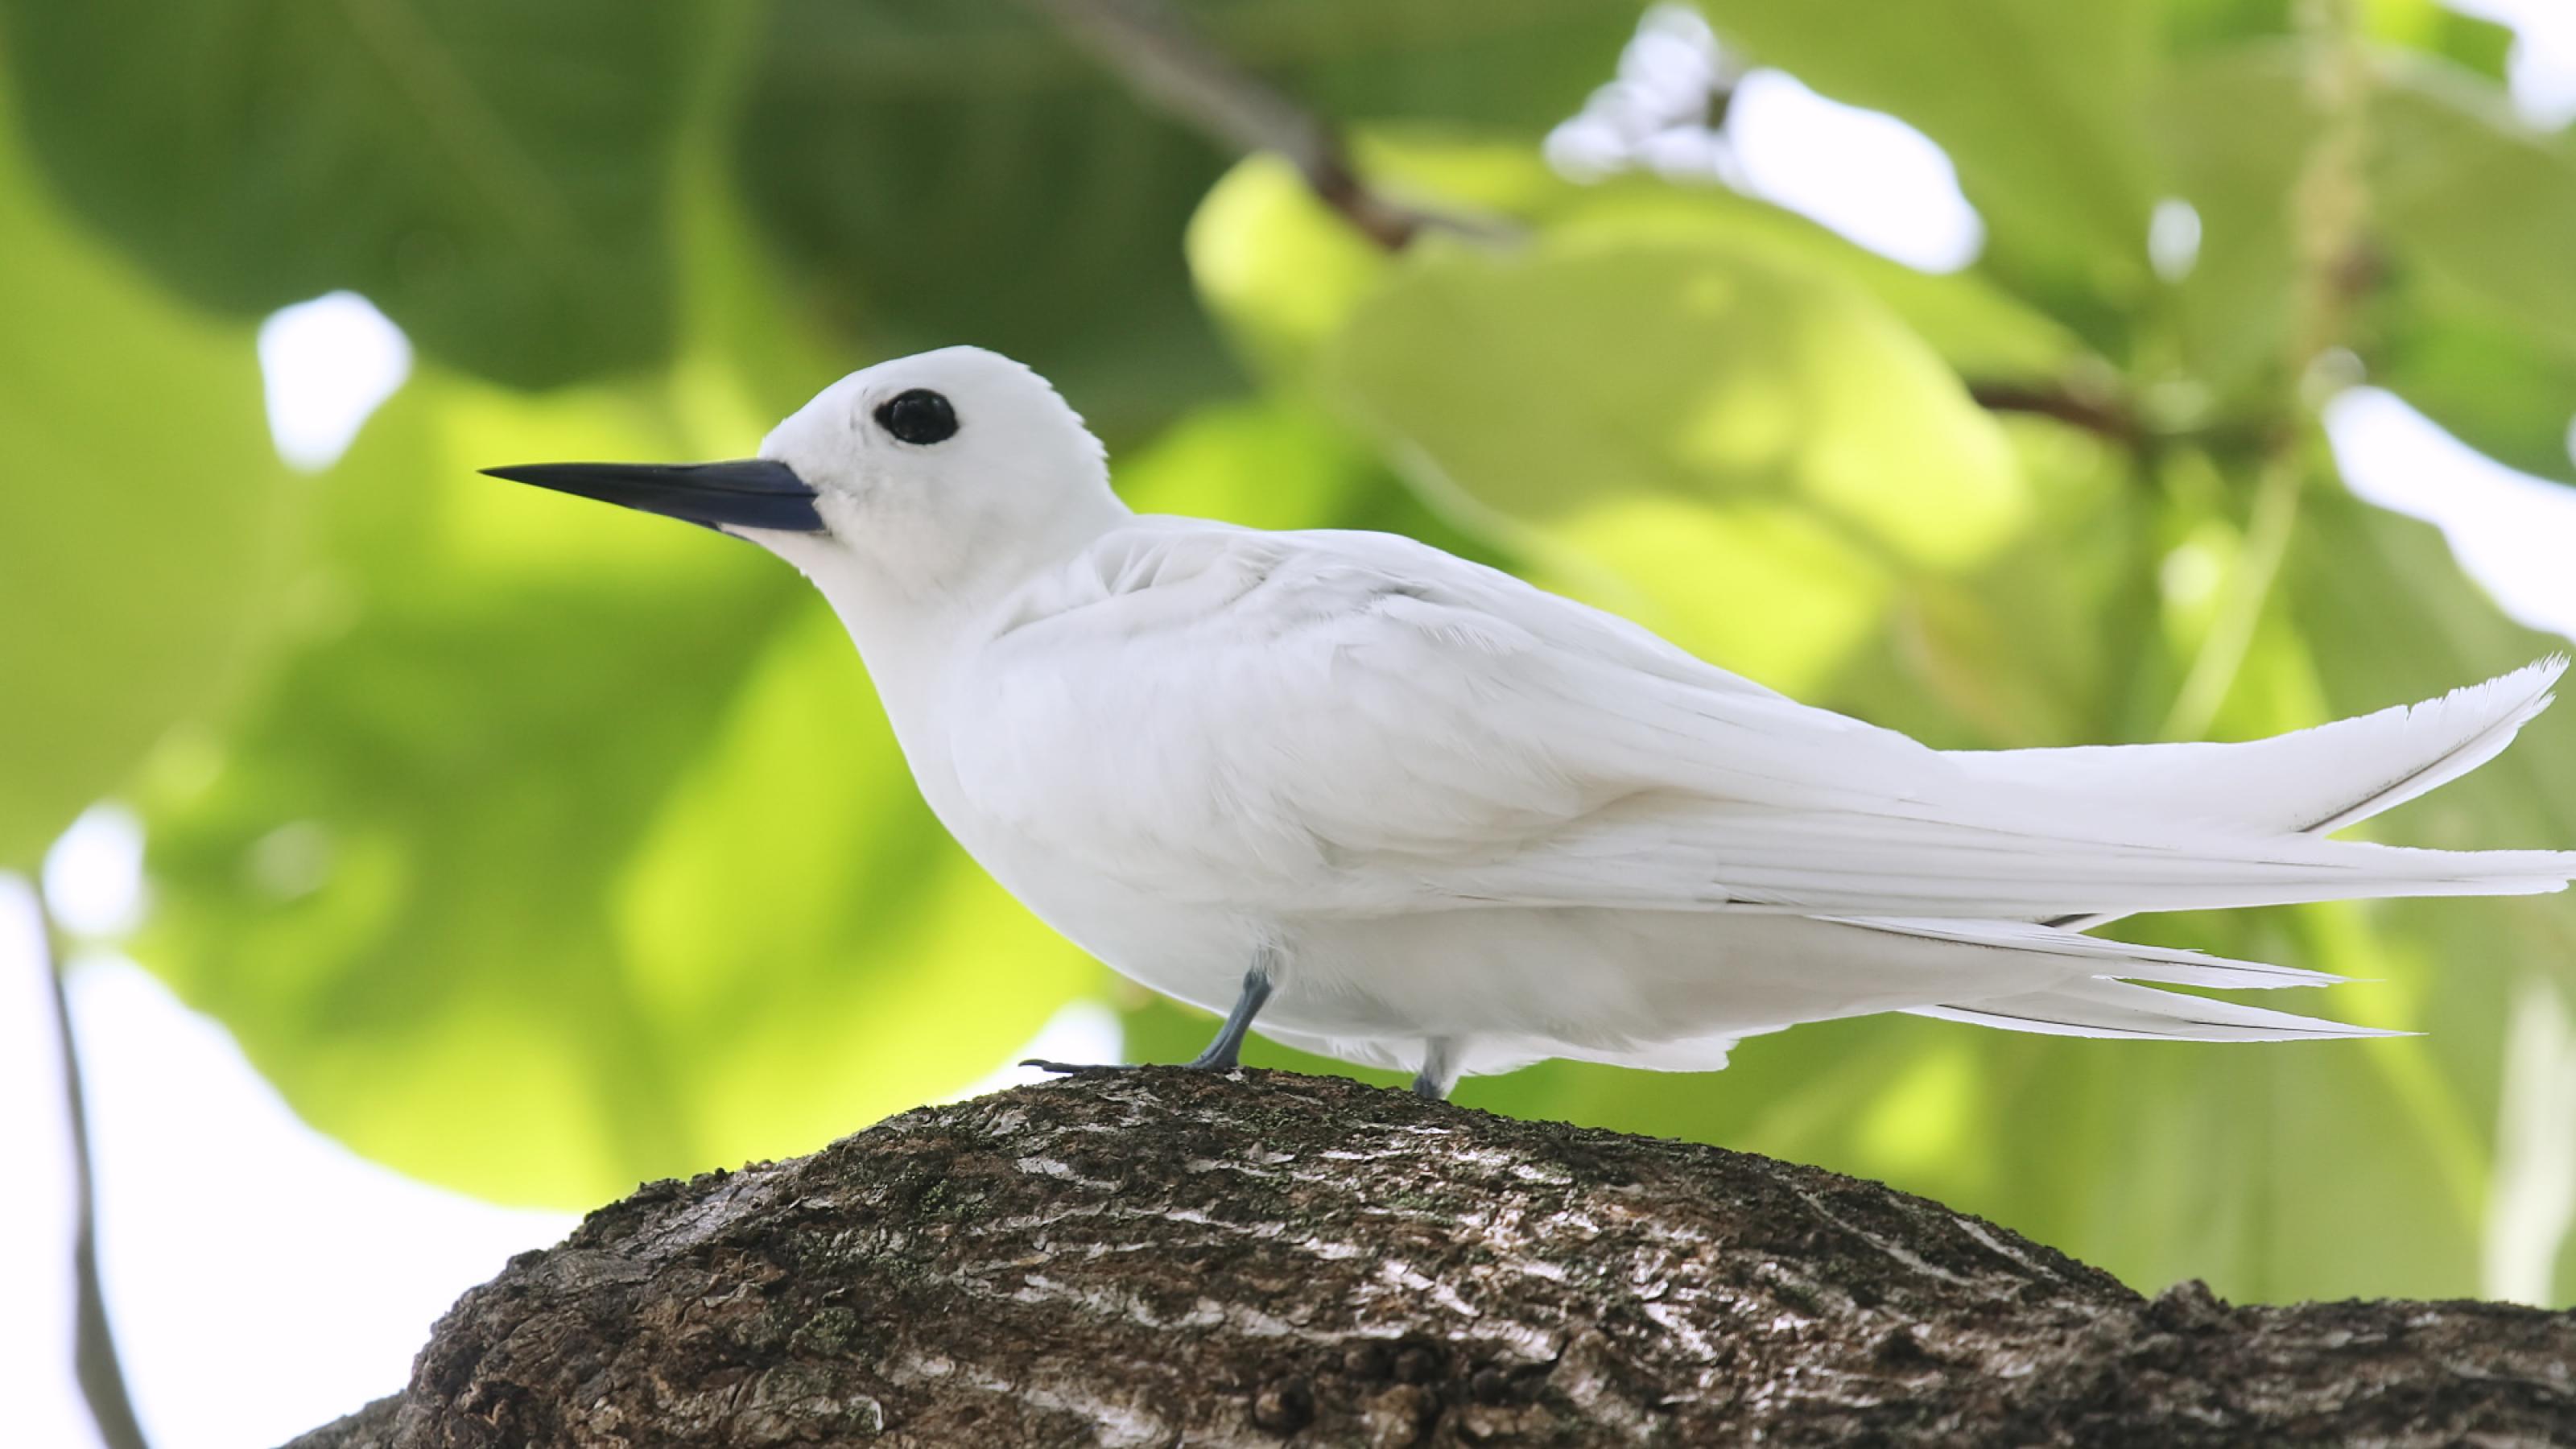 Ein weißer Vogel mit blauschwarzem Schnabel sitzt auf einem Ast vor grünen Blättern im Hintergrund.